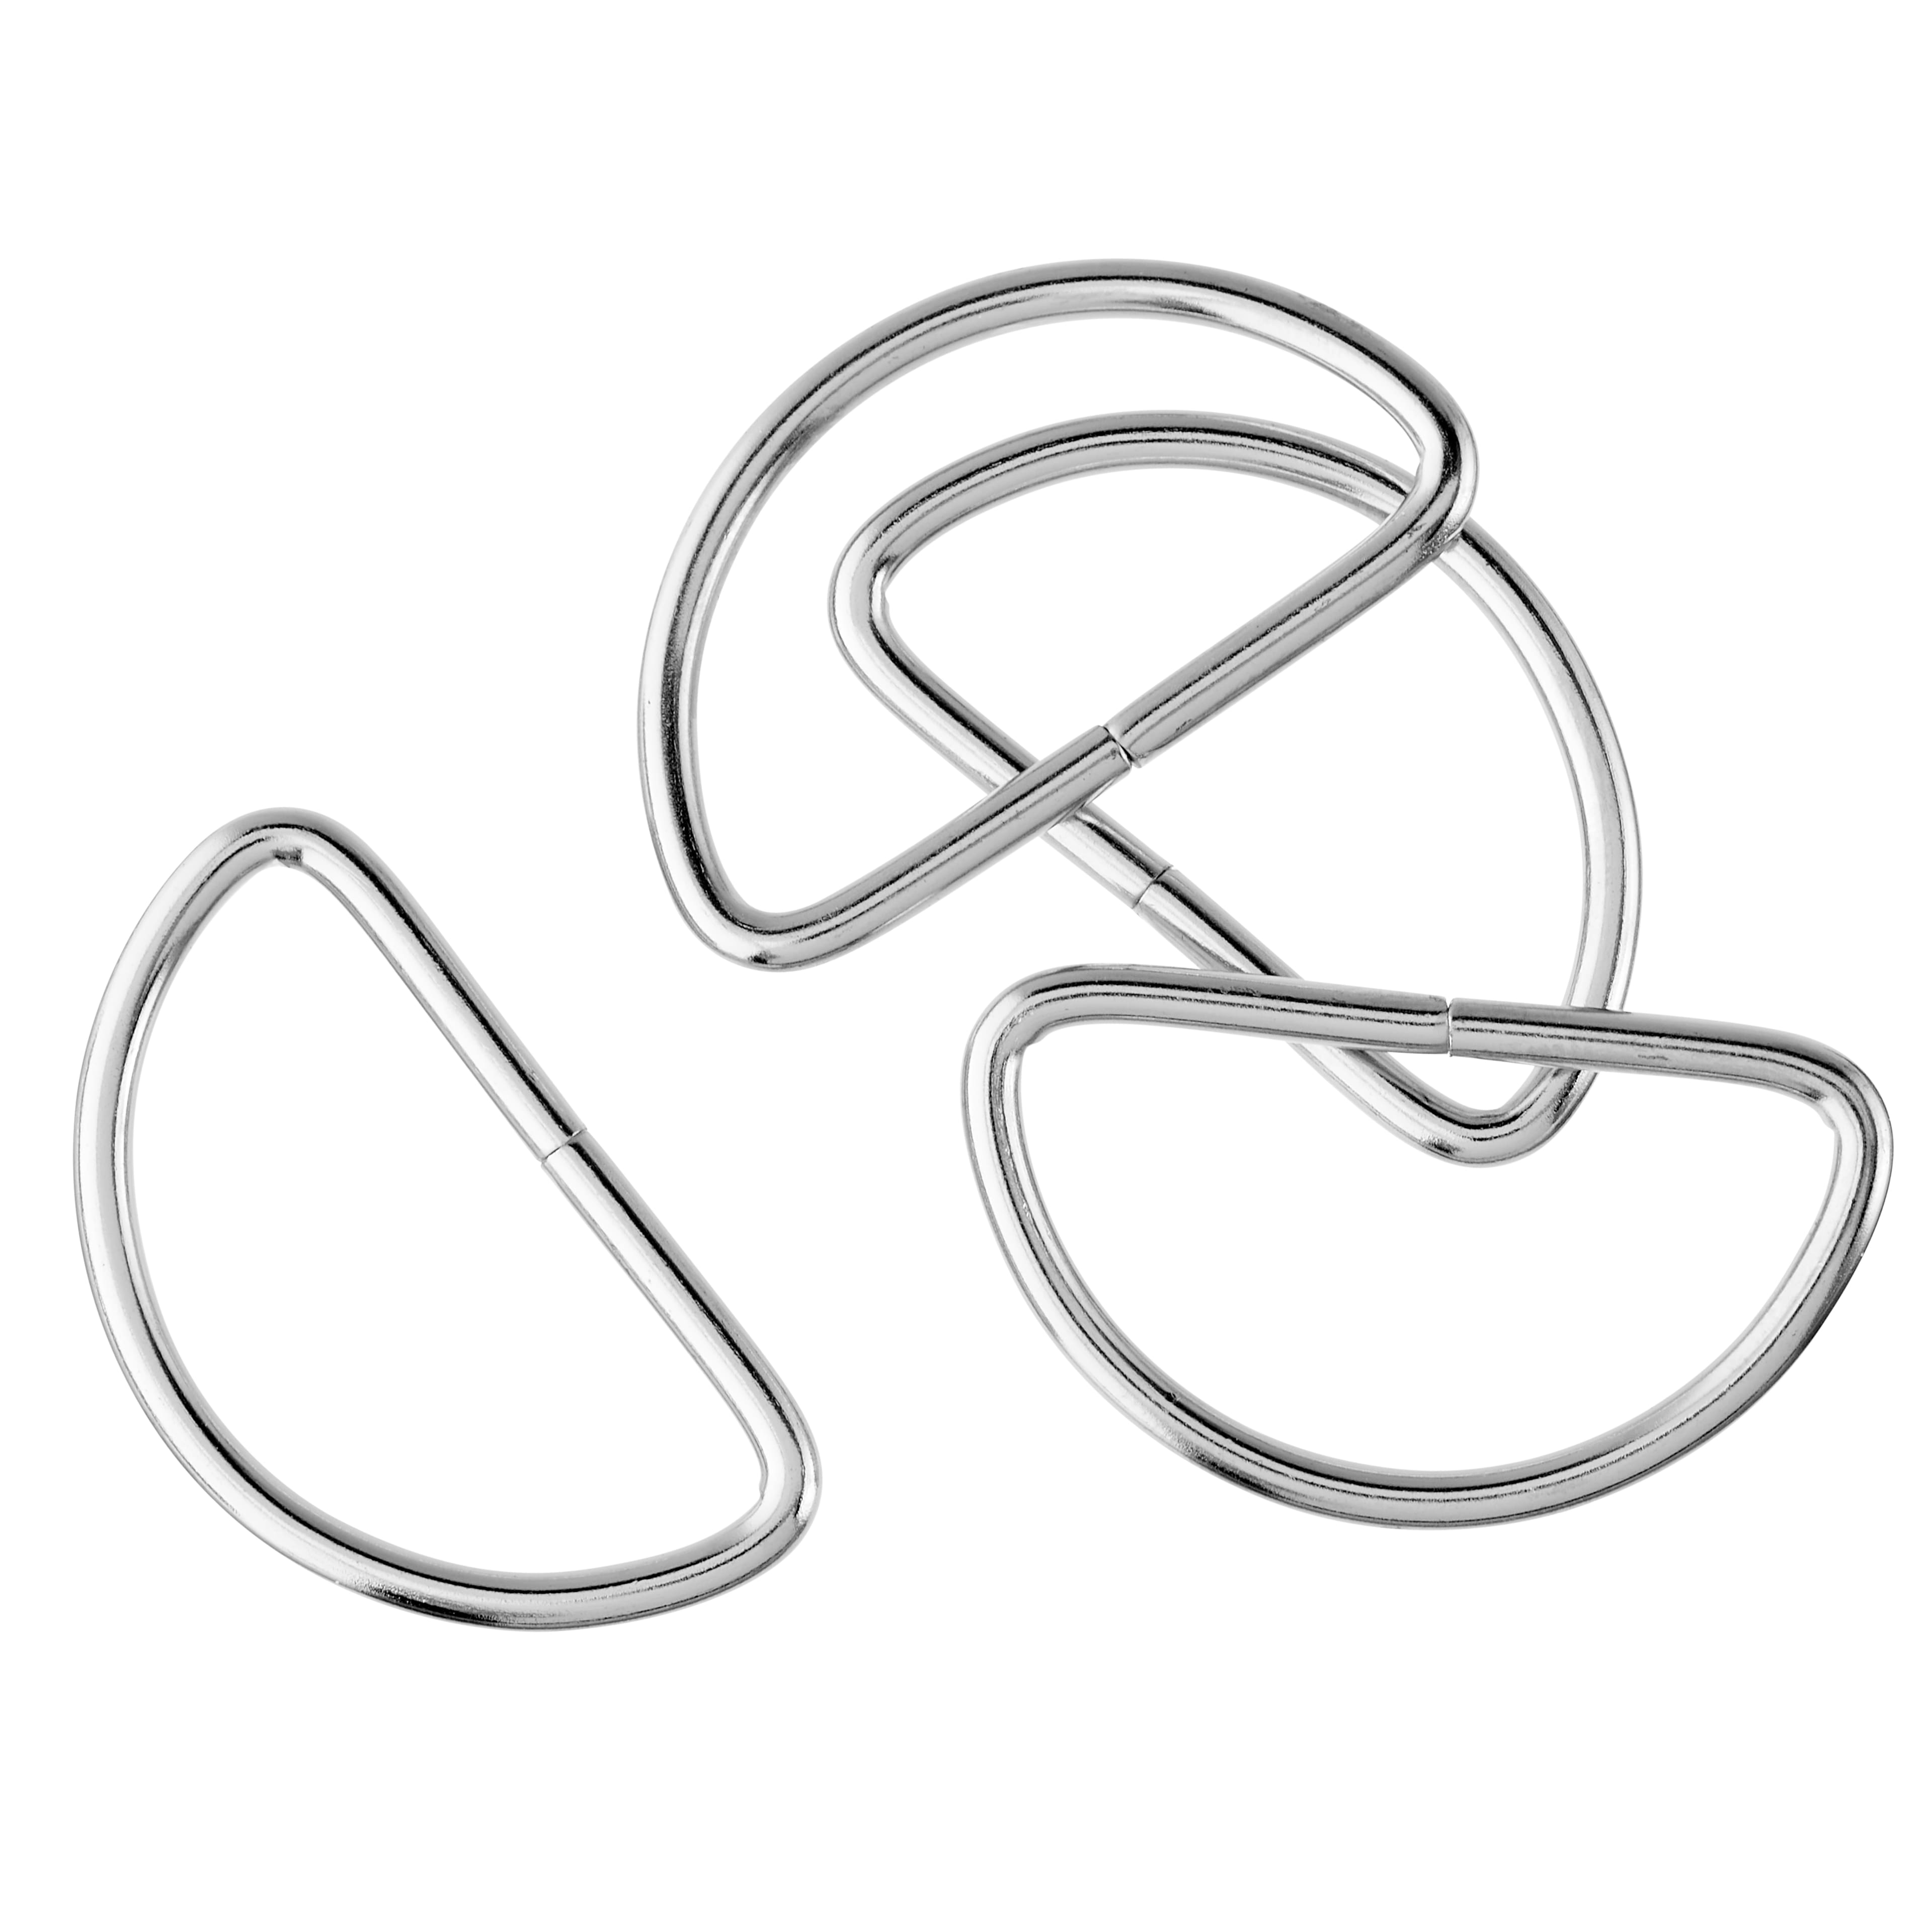 Loops & Threads™ Metal D-Rings, 1 1/2